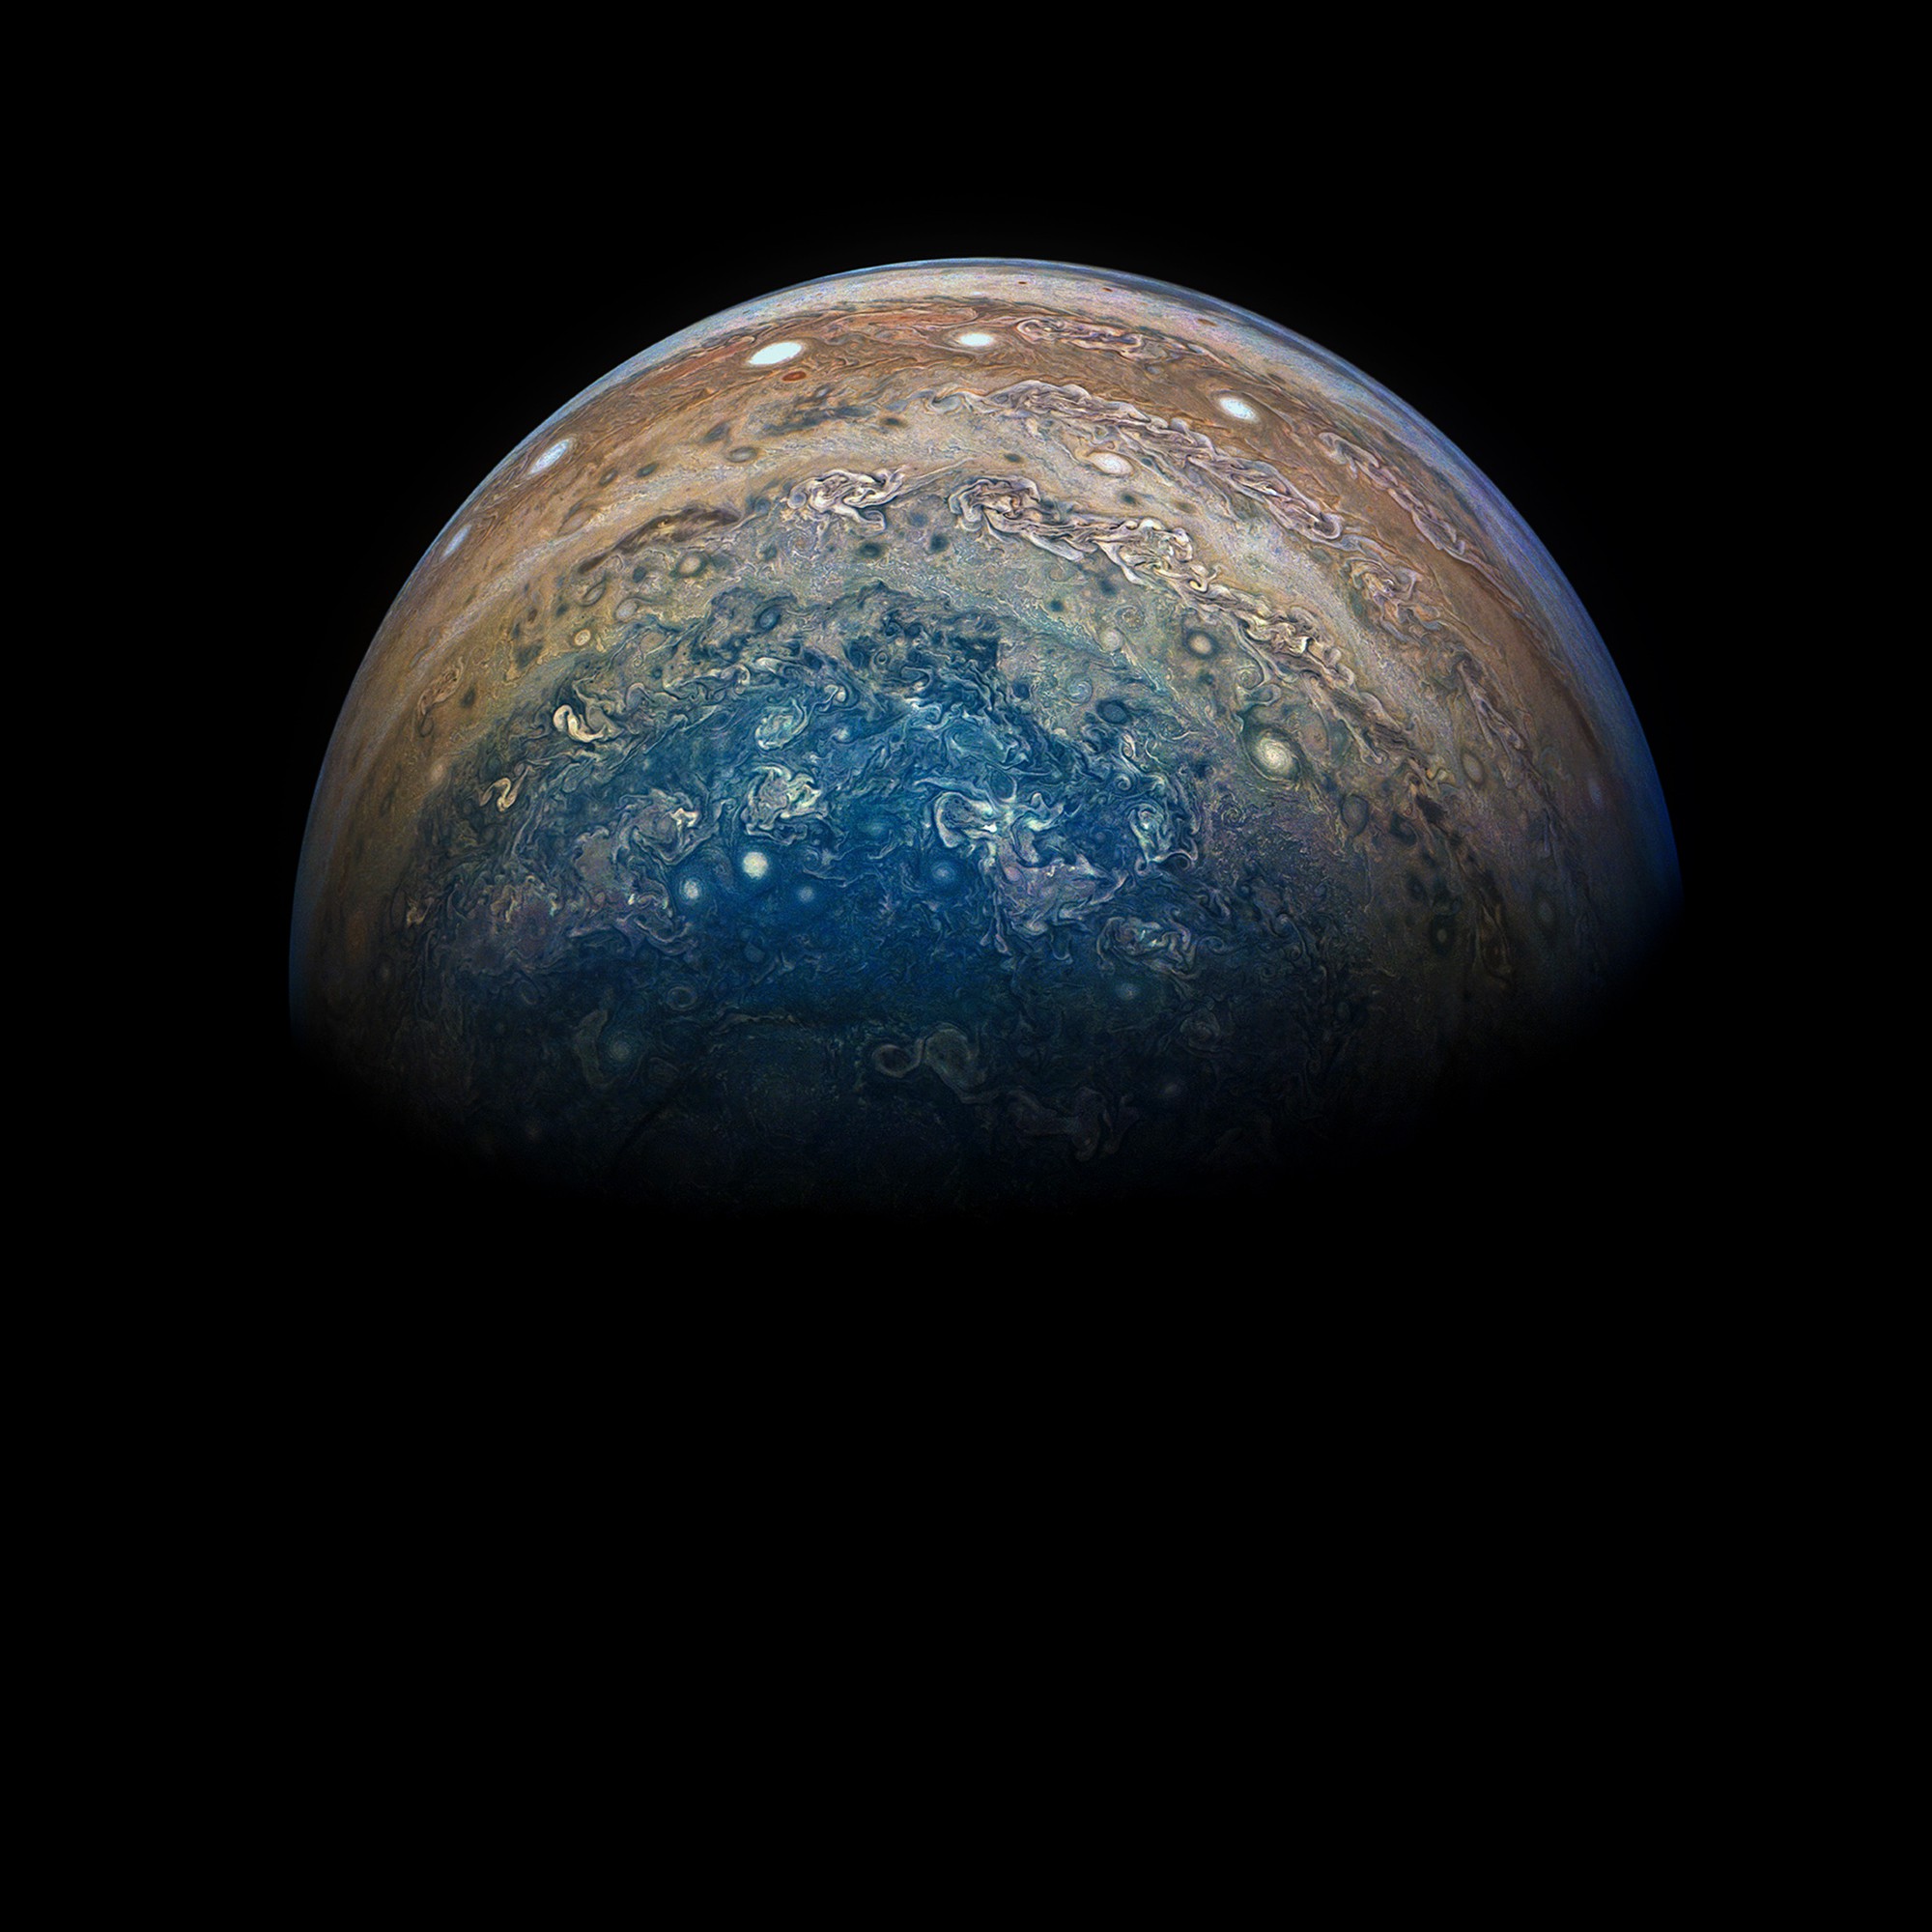 Sonda NASA za 1 miliardu dolárov poslala fotky Jupitera. Sú prekrásne